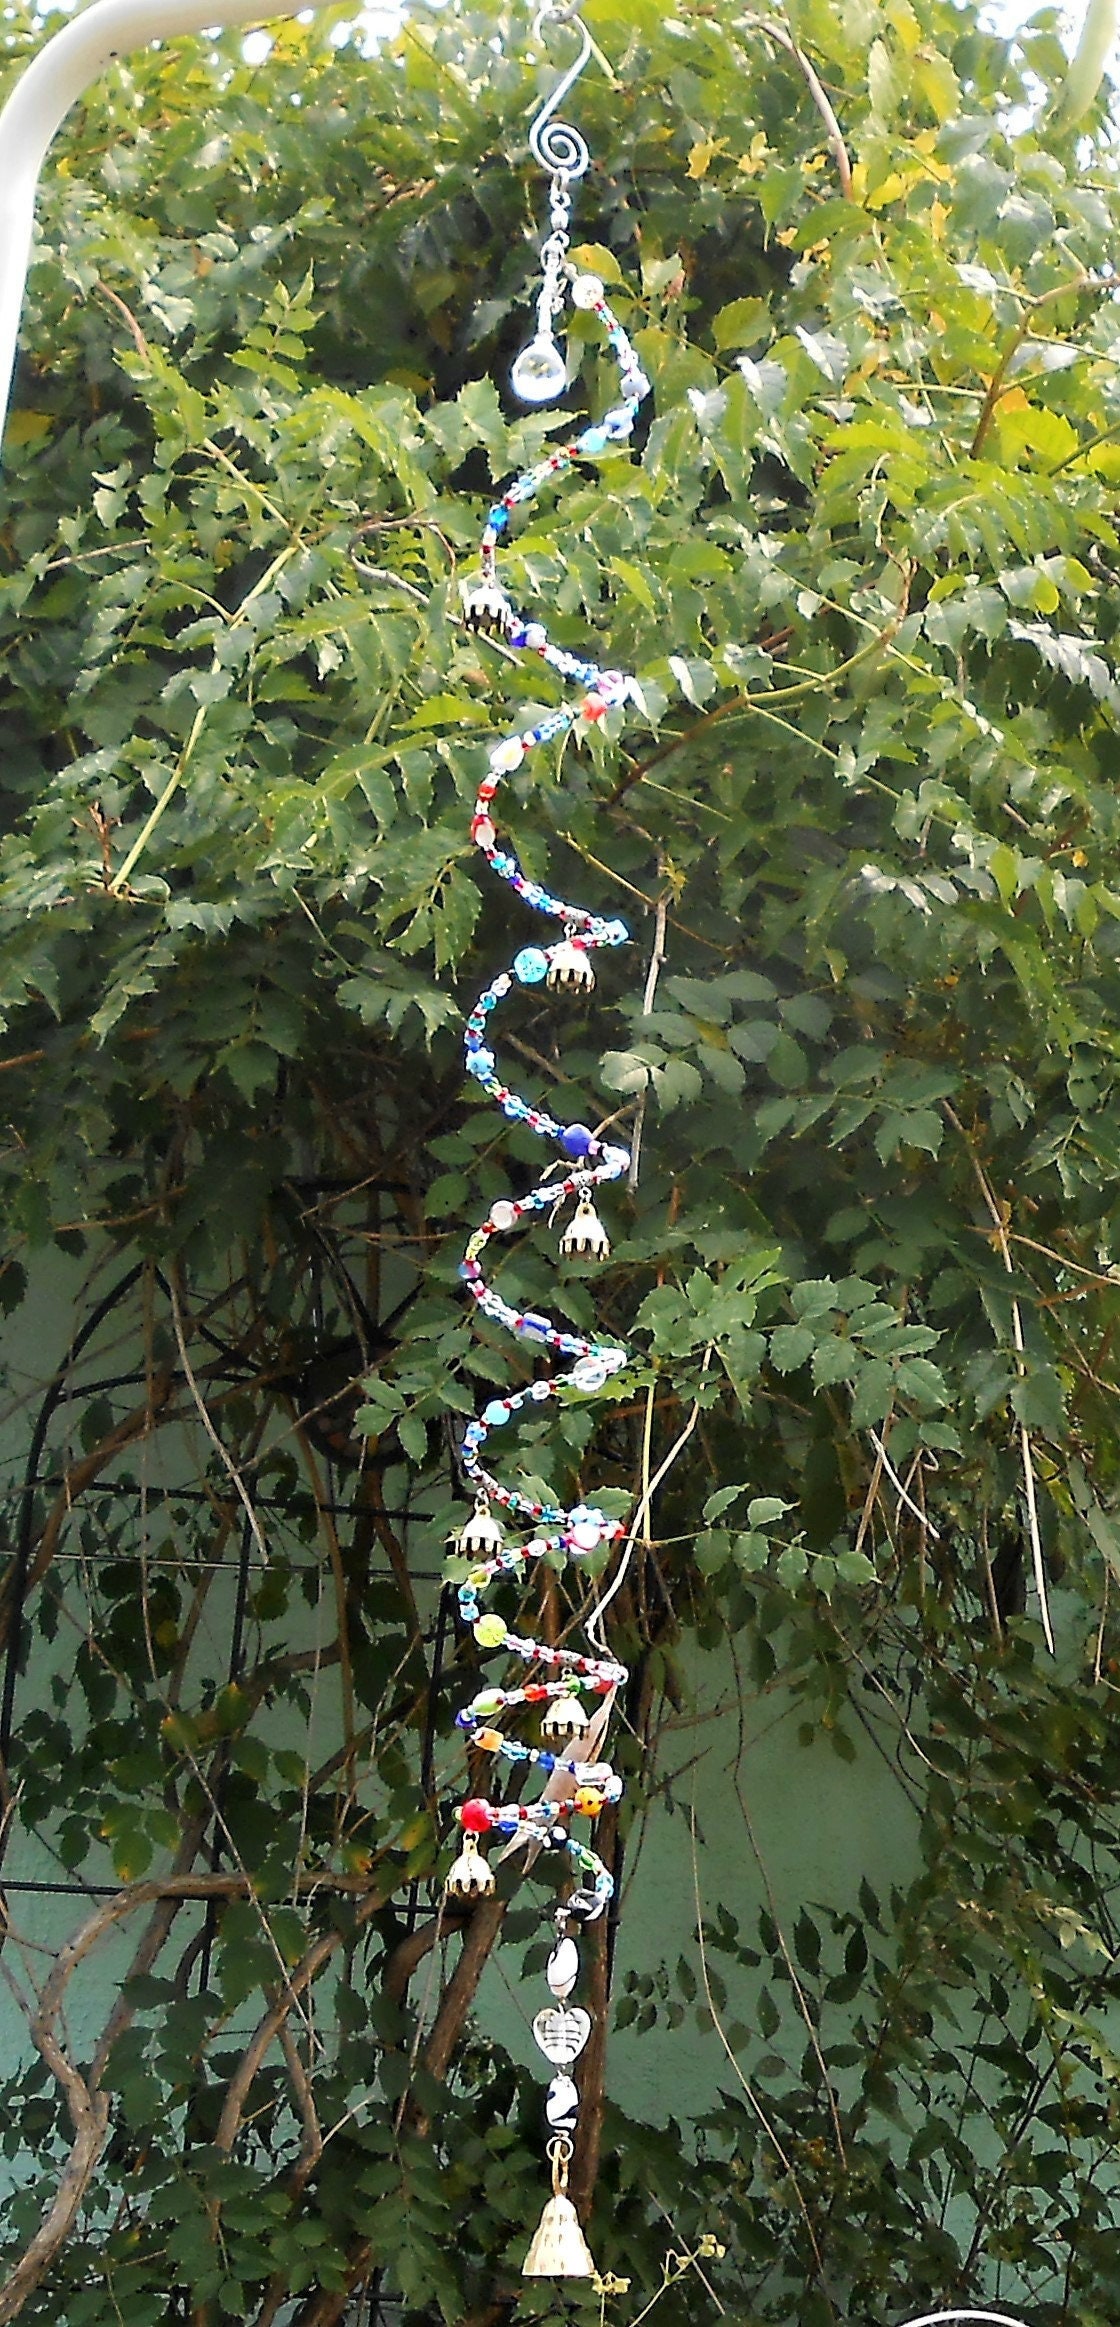 Capteur de soleil à carillon éolien Tree of Life, cloches en métal argenté  avec perles de verre arc-en-ciel Déco intérieure/extérieure/Patio -   France